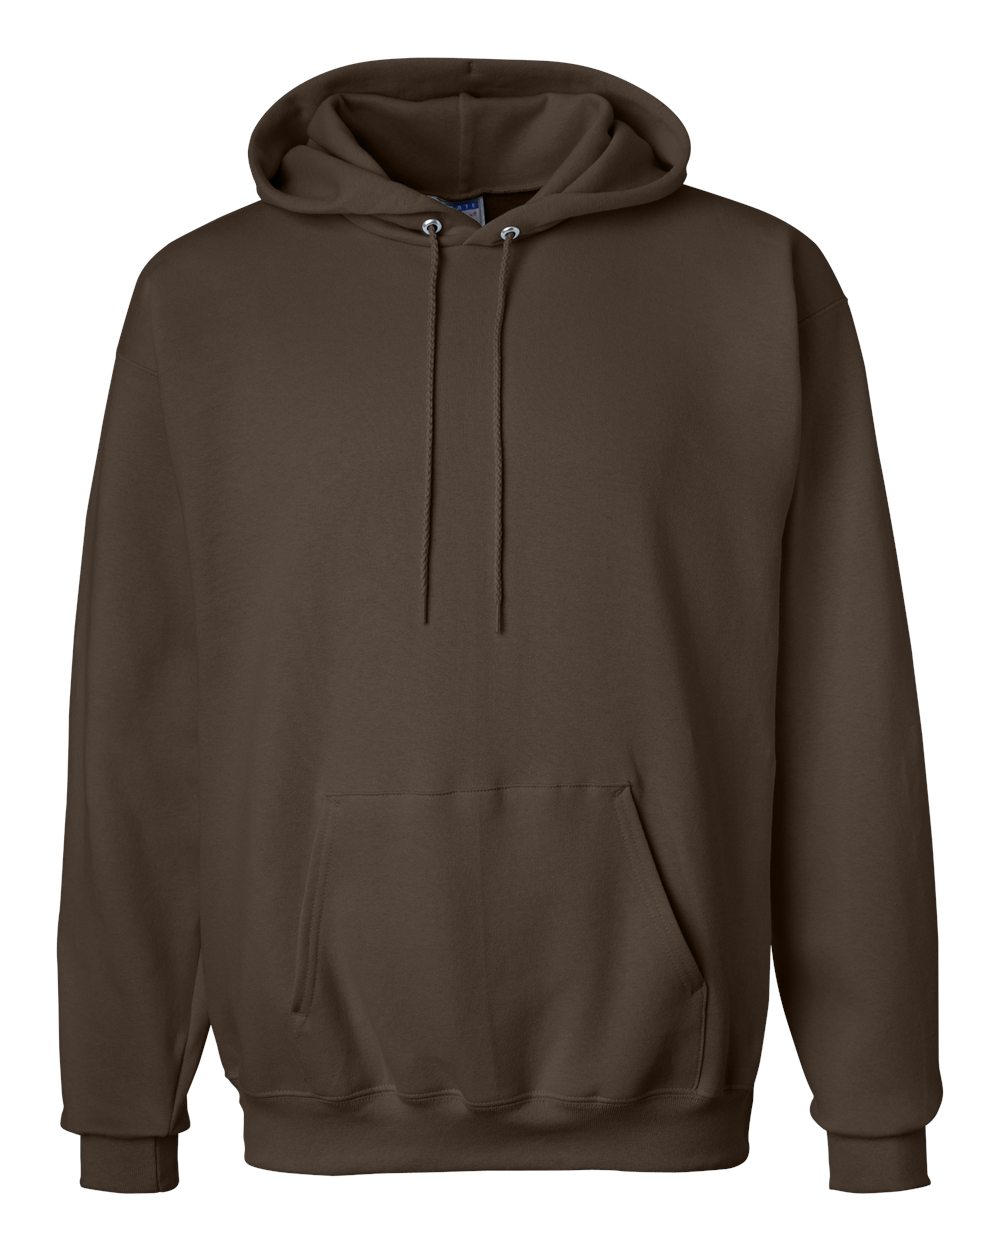 mens hoodies Ultimate Cotton® Hooded Sweatshirt